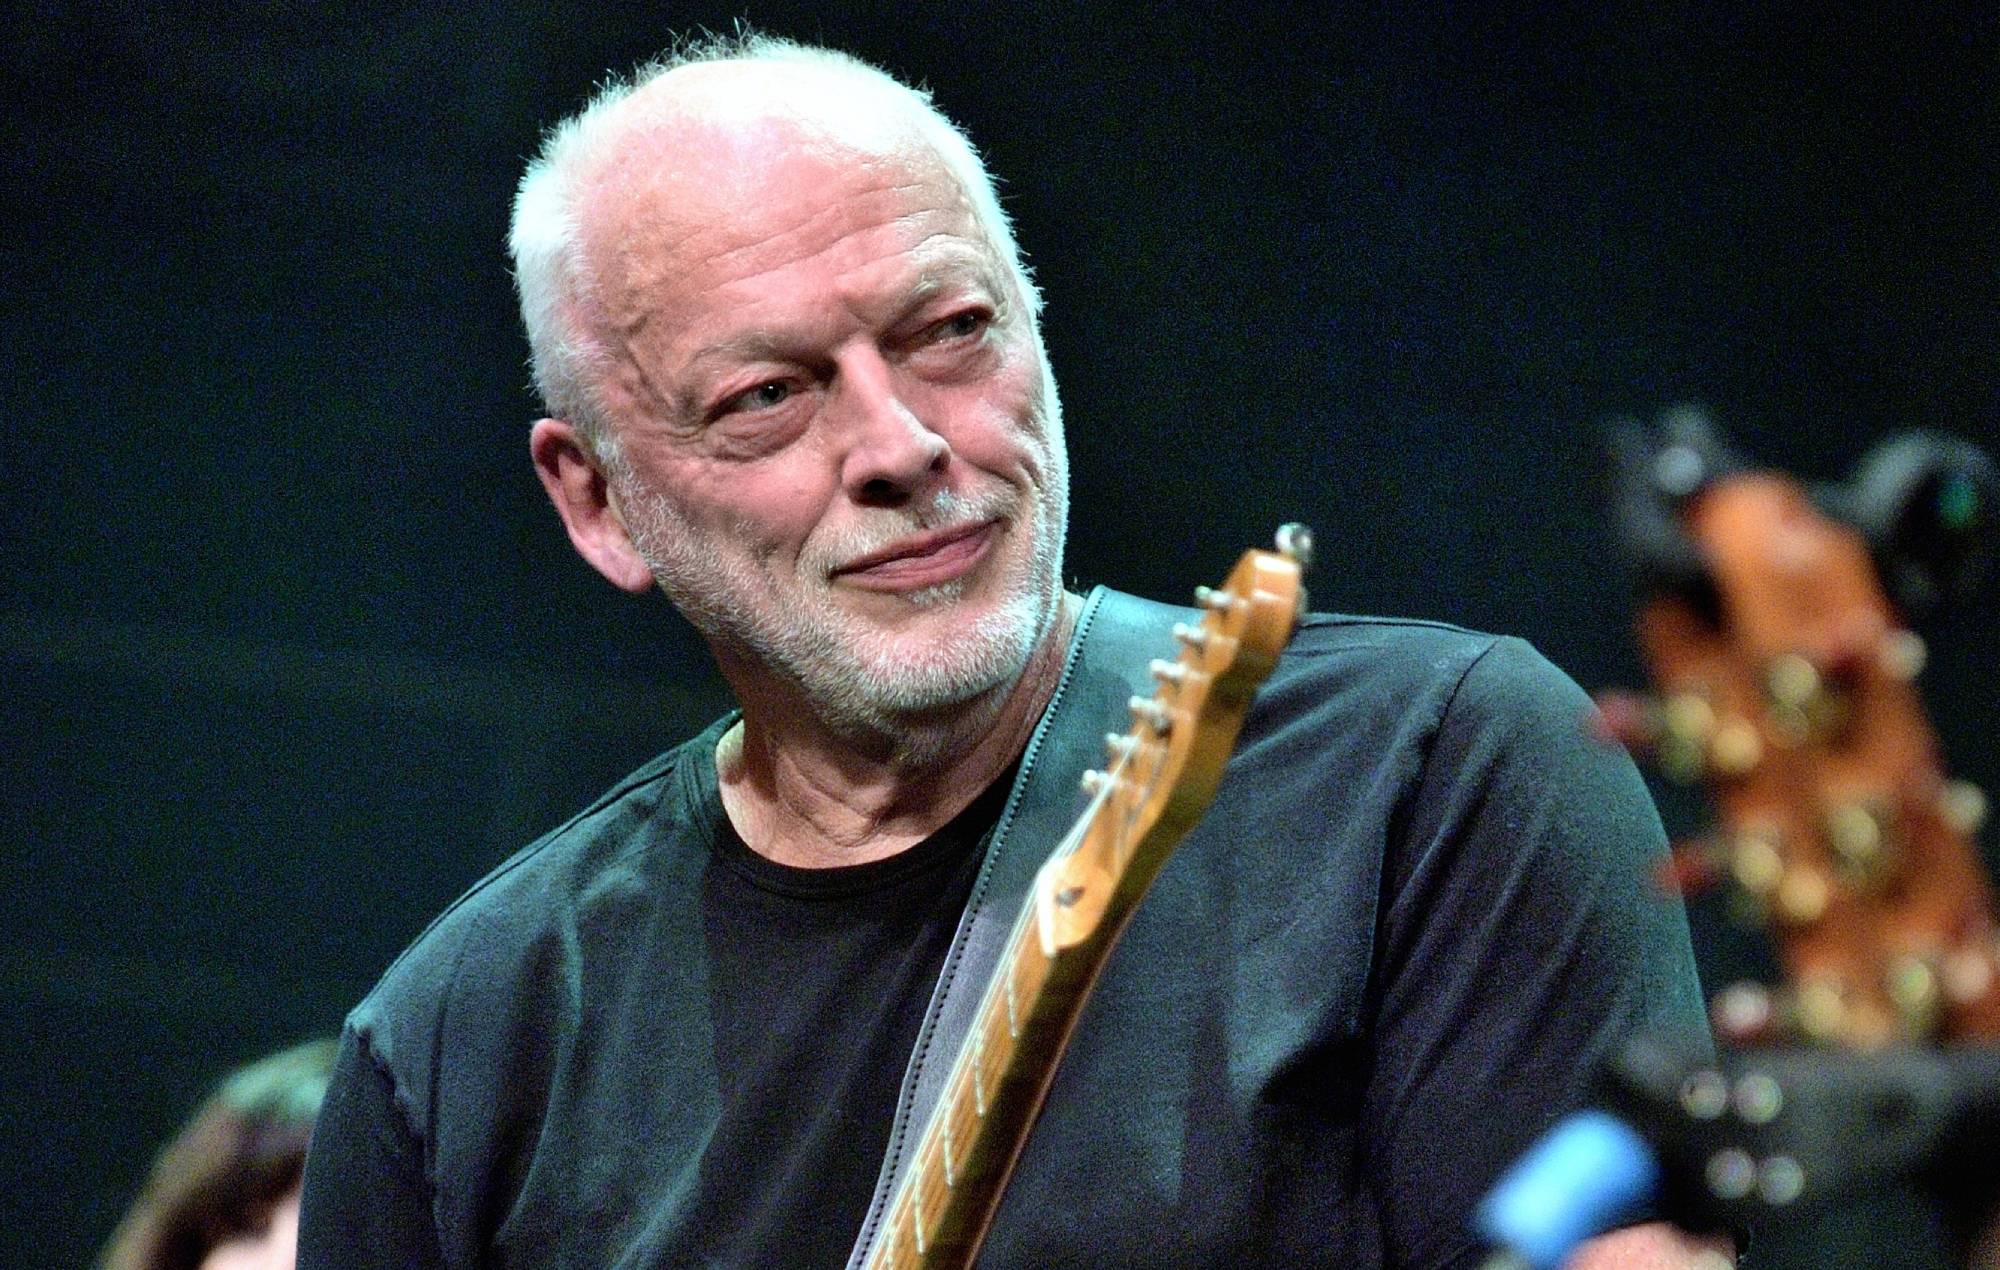 David Gilmour permitiría un espectáculo de hologramas al estilo ABBA Voyage de Pink Floyd bajo "una serie de condiciones muy, muy difíciles y onerosas"